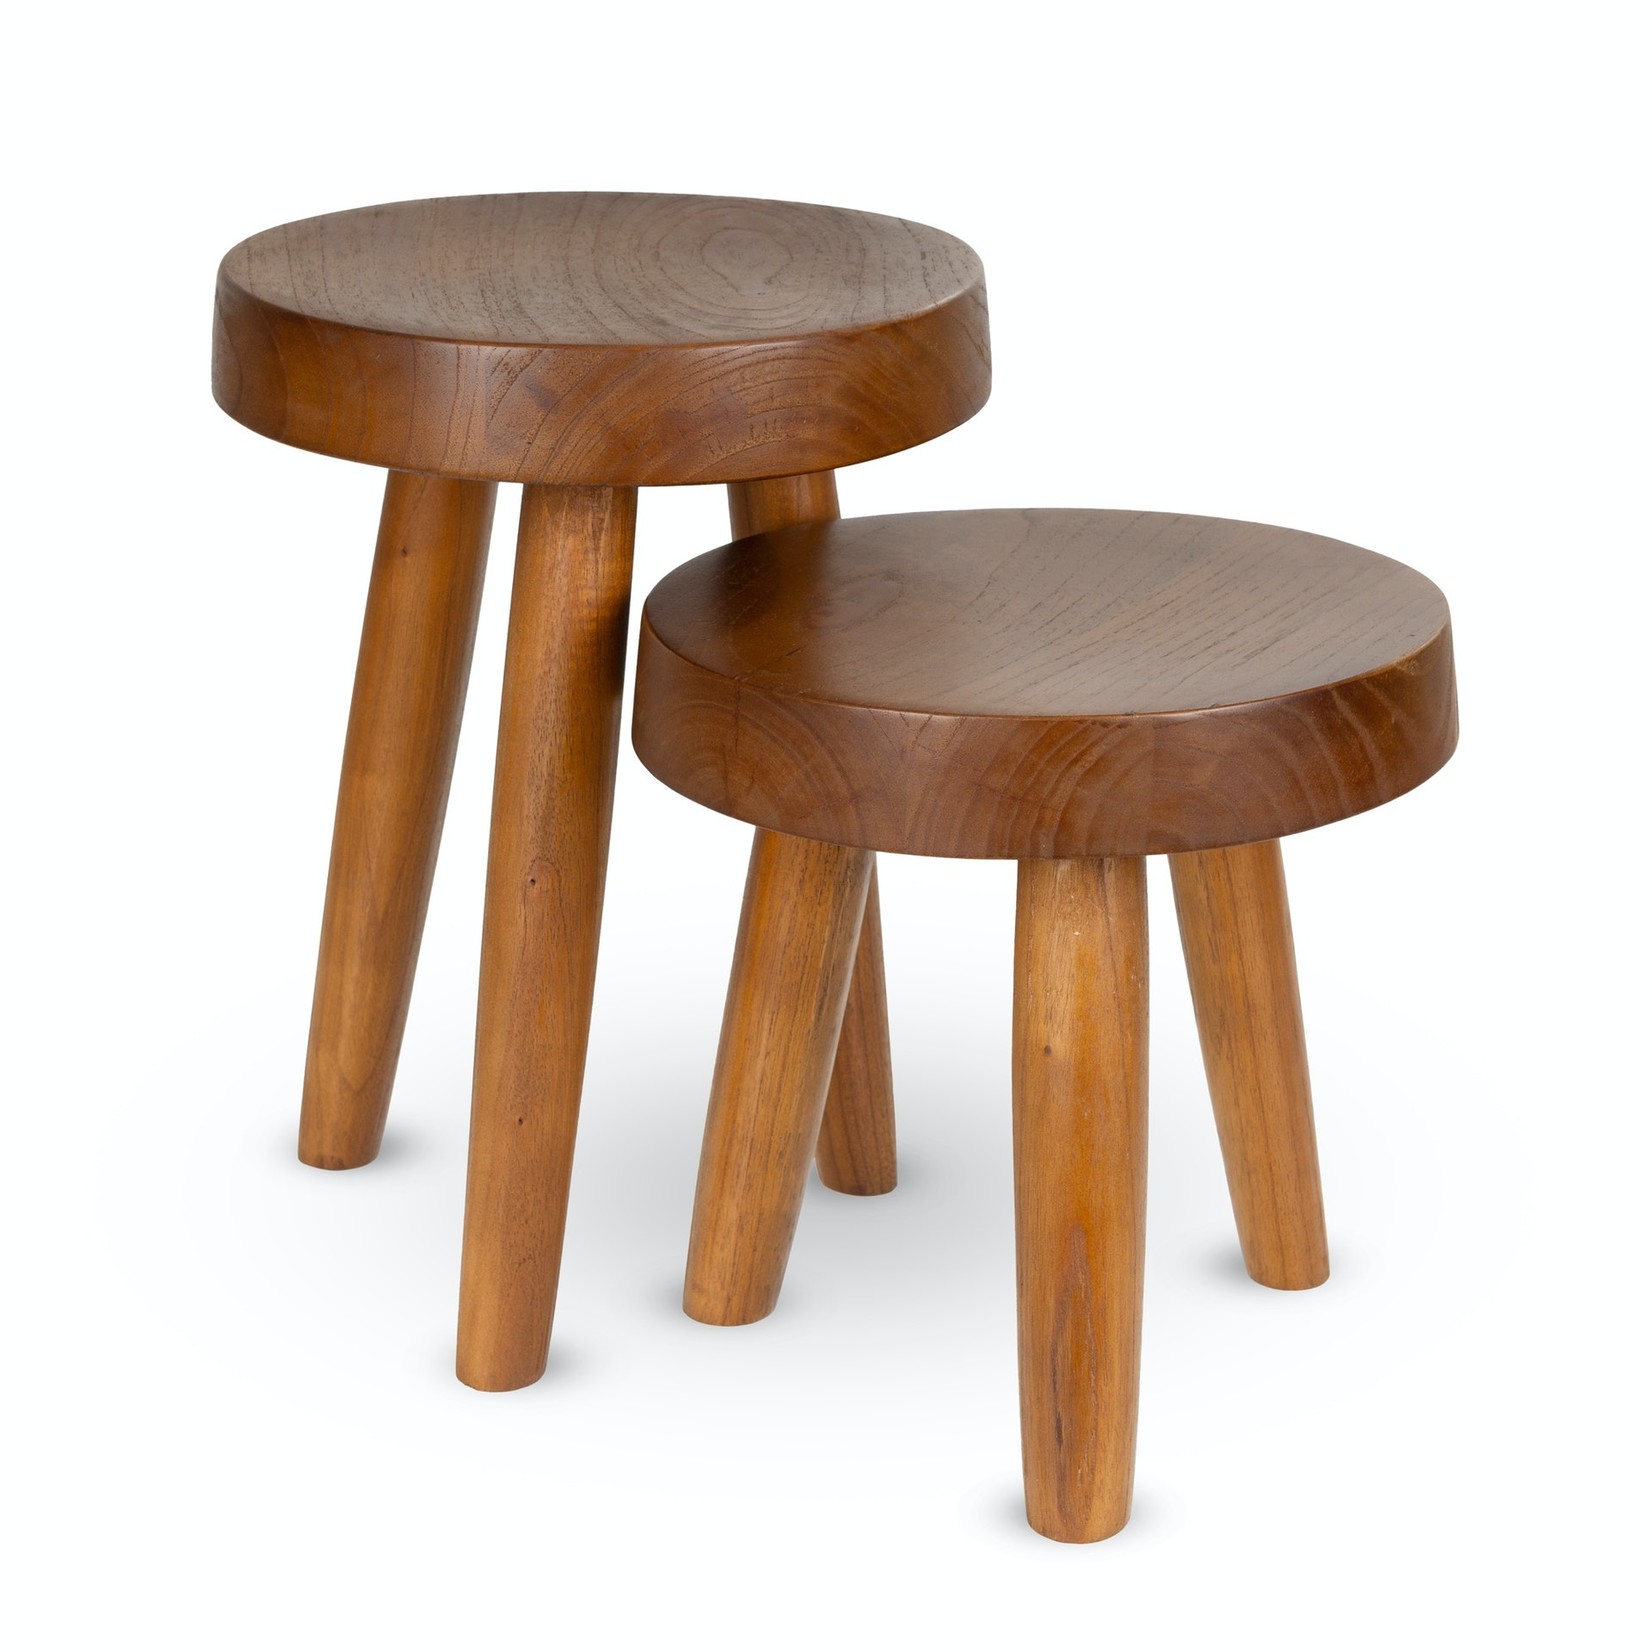 DETJER Chandigarh style wooden stool - Dark brown